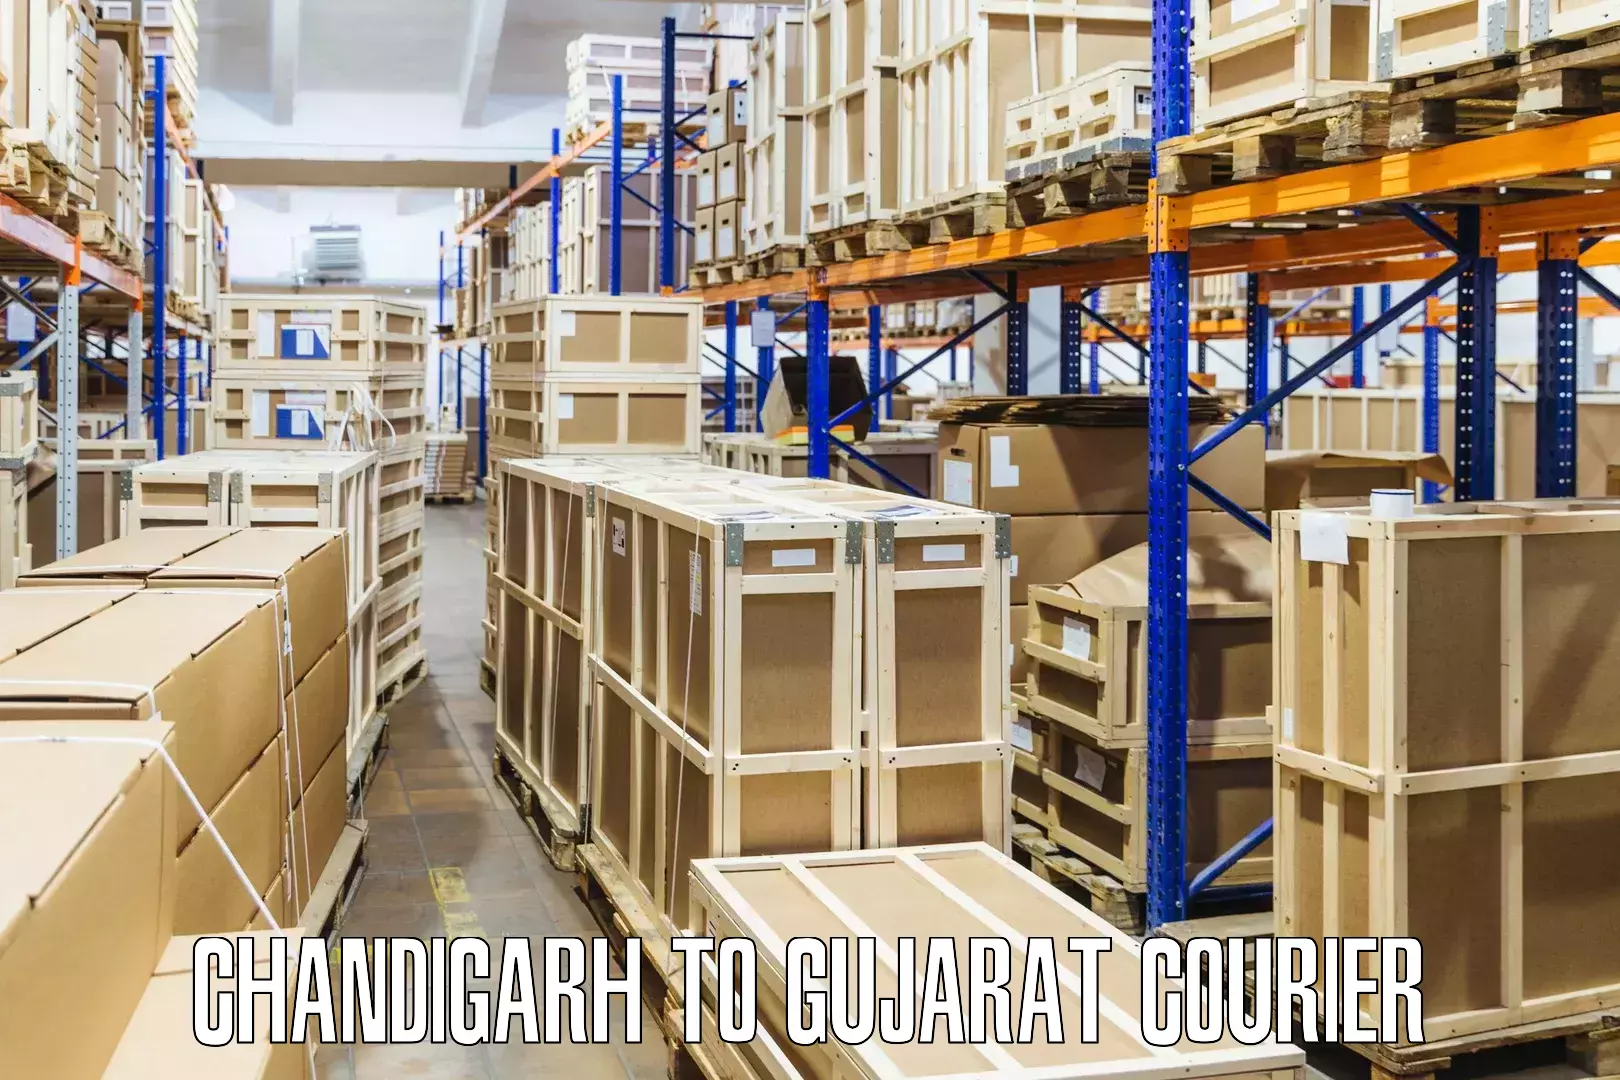 Efficient parcel service Chandigarh to Gujarat